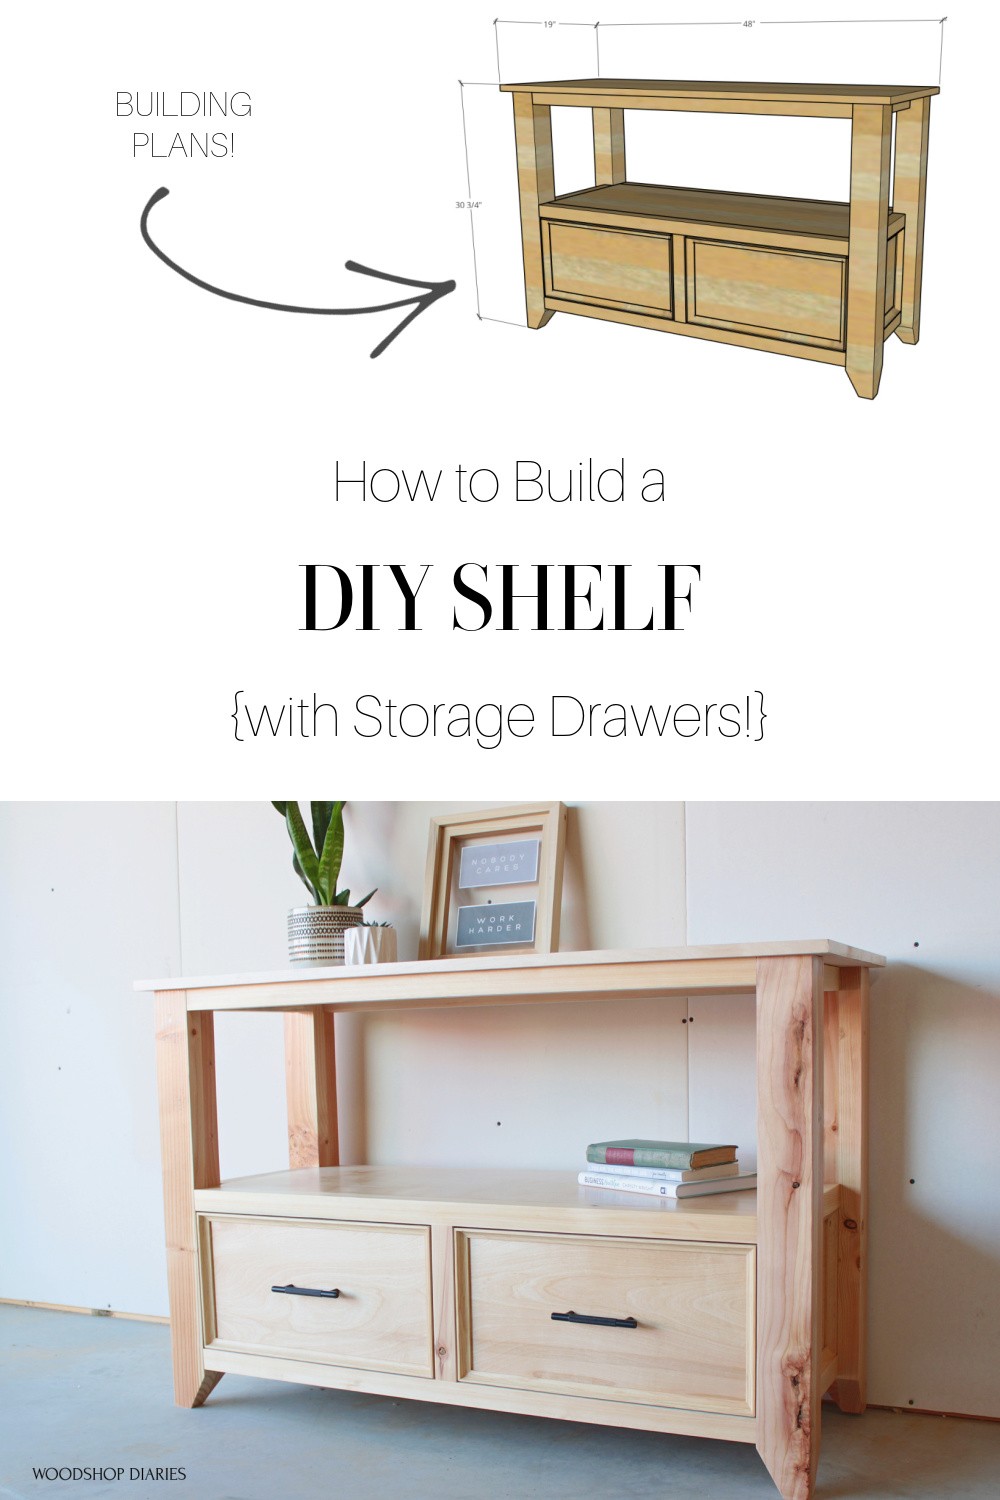 Build a DIY Drawer Organizer - Build Basic